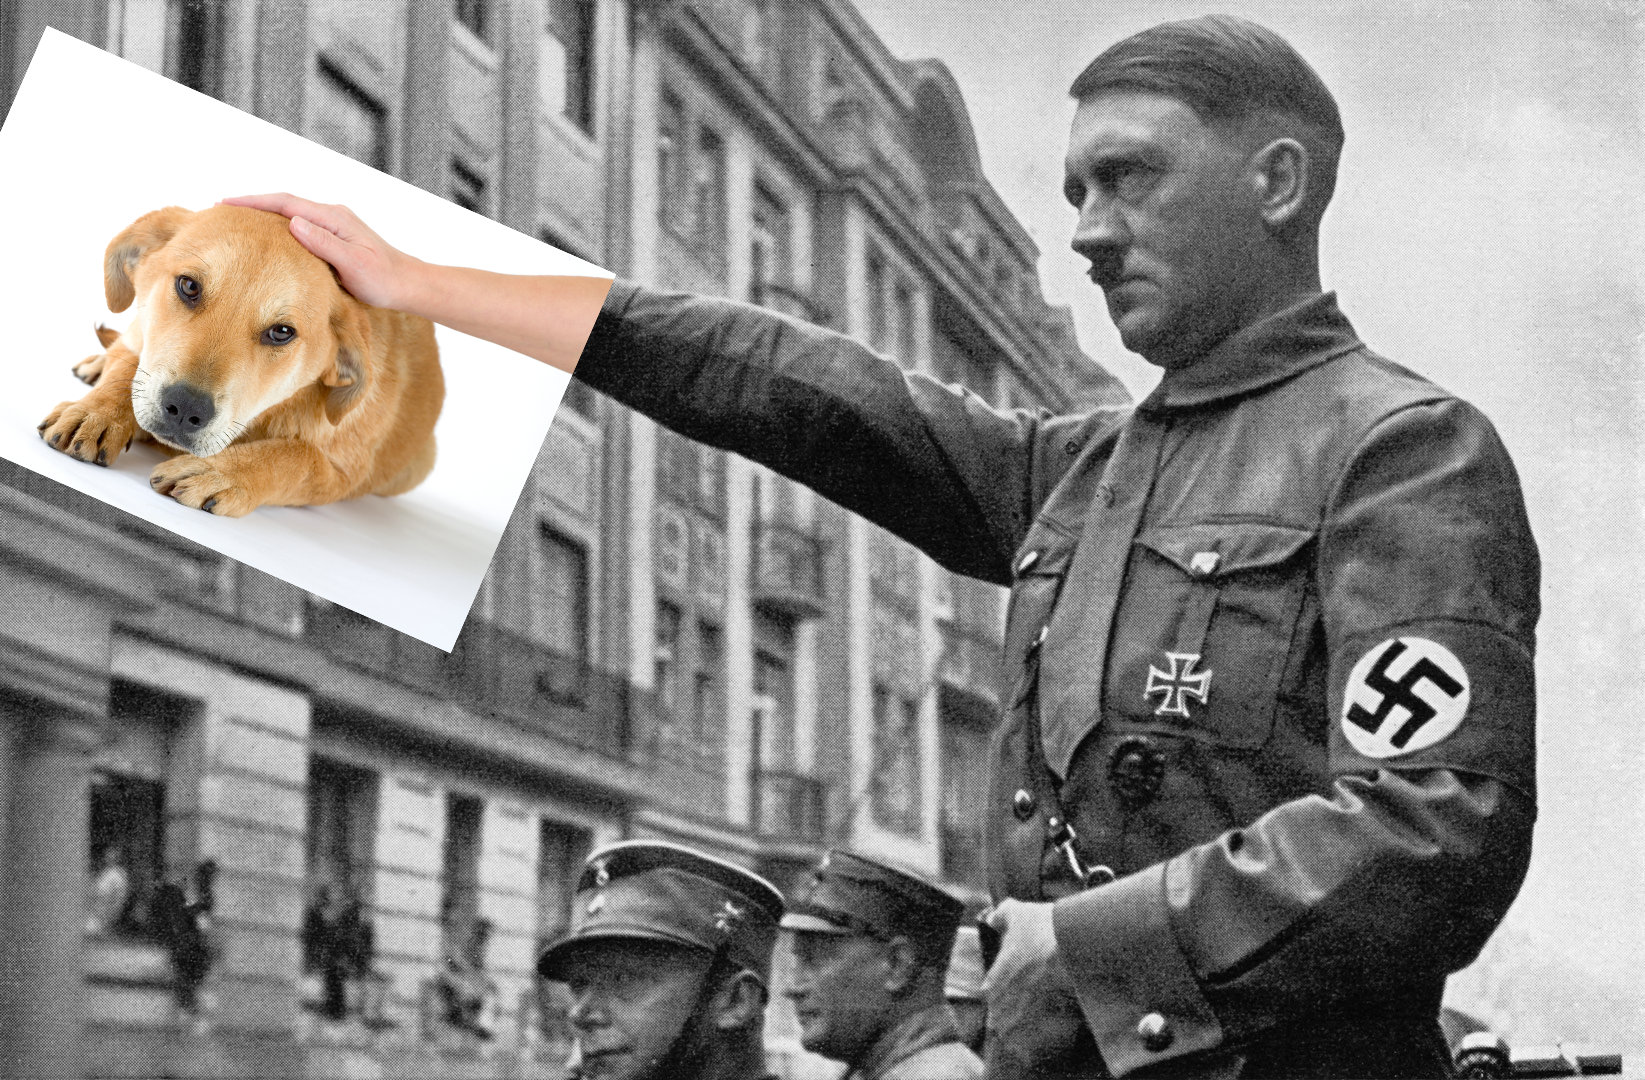 Hitler petting dog.